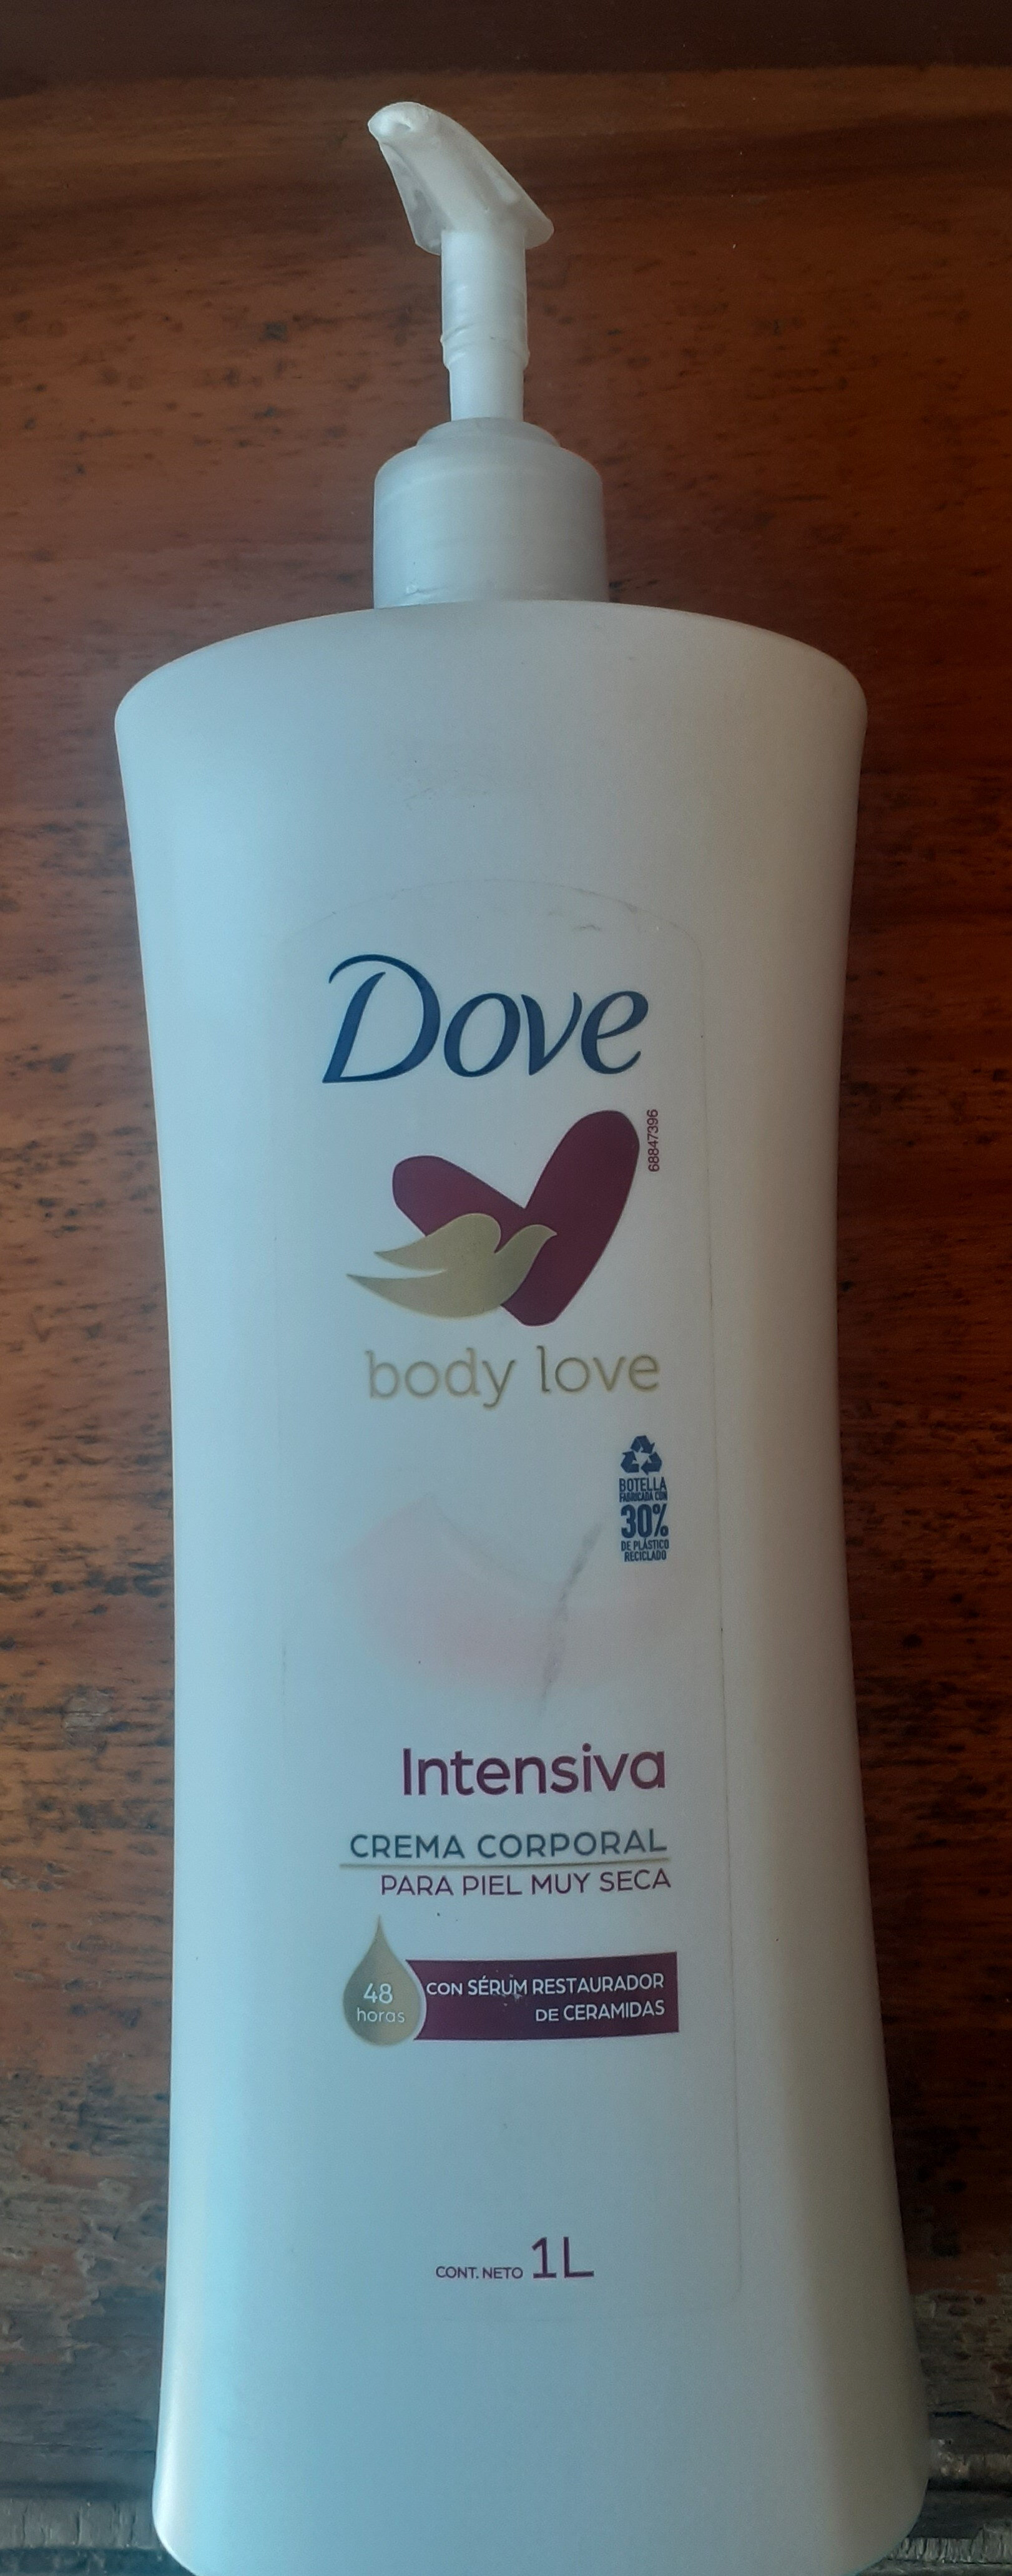 Dove Body Love Intensiva - Produit - es